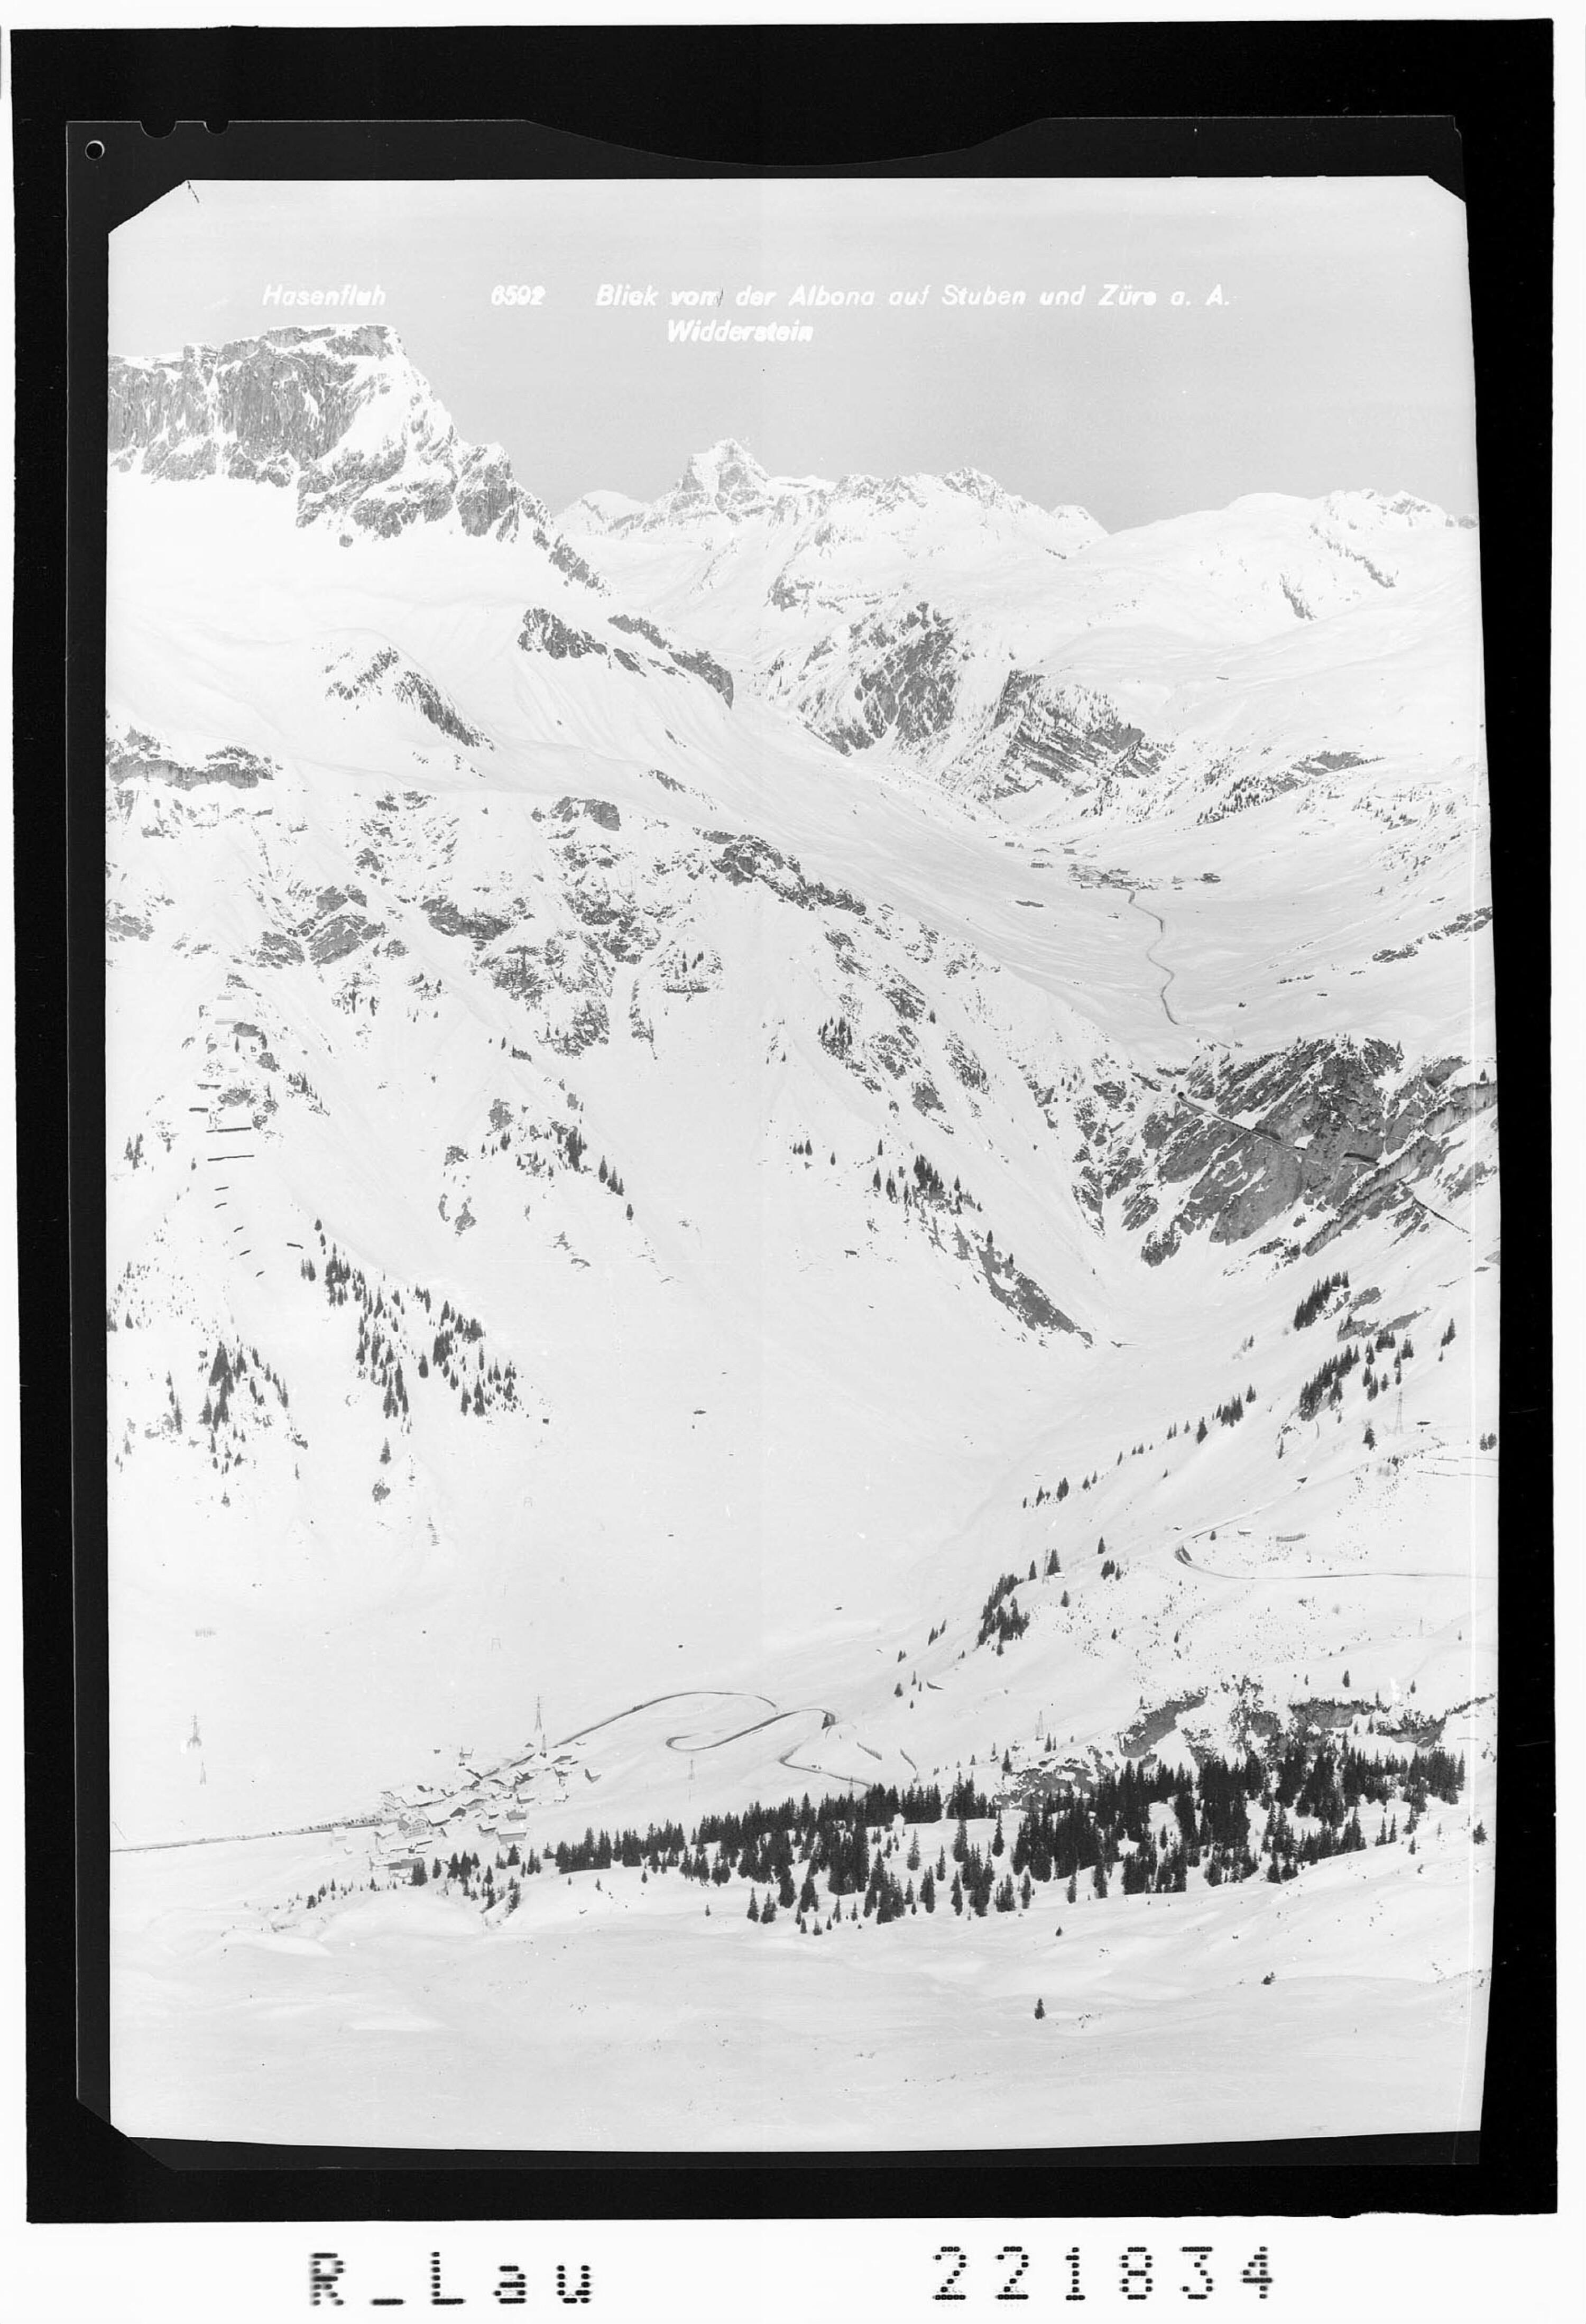 Blick von der Albona auf Stuben und Zürs am Arlberg></div>


    <hr>
    <div class=